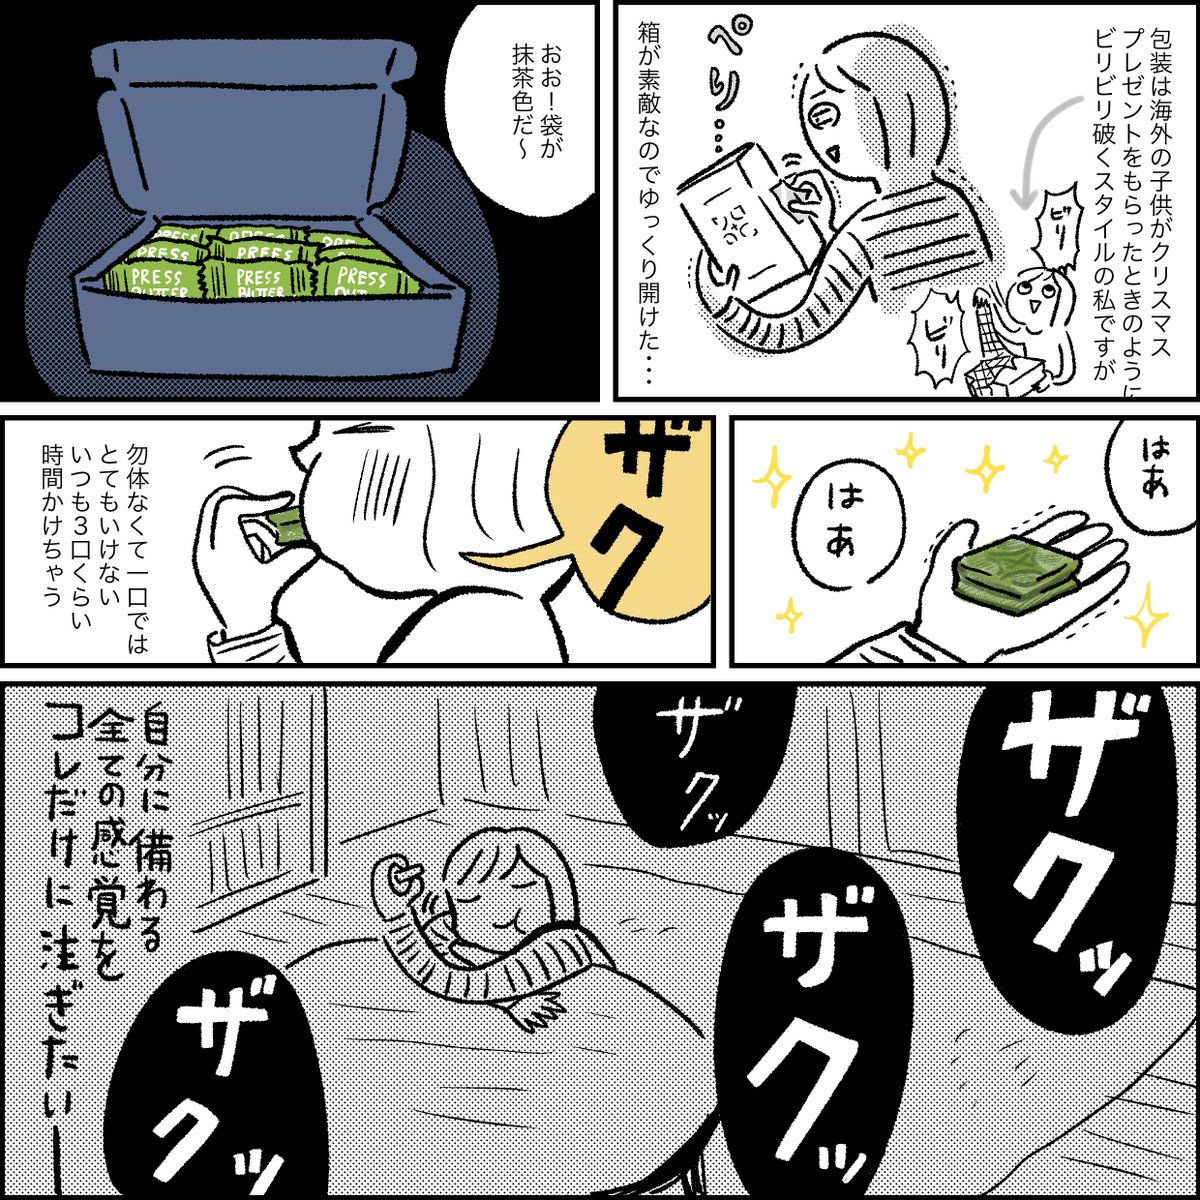 #洋菓子の日 らしいので5年前くらいに 「PRESS BUTTER SAND」が京都に初出店したときの感動を描いた漫画(再掲)です。当時は東京でしか買えなかったんじゃよ・・。今はオンラインショップもできててびっくりする!本当に美味しいよね😍   #漫画が読めるハッシュタグ